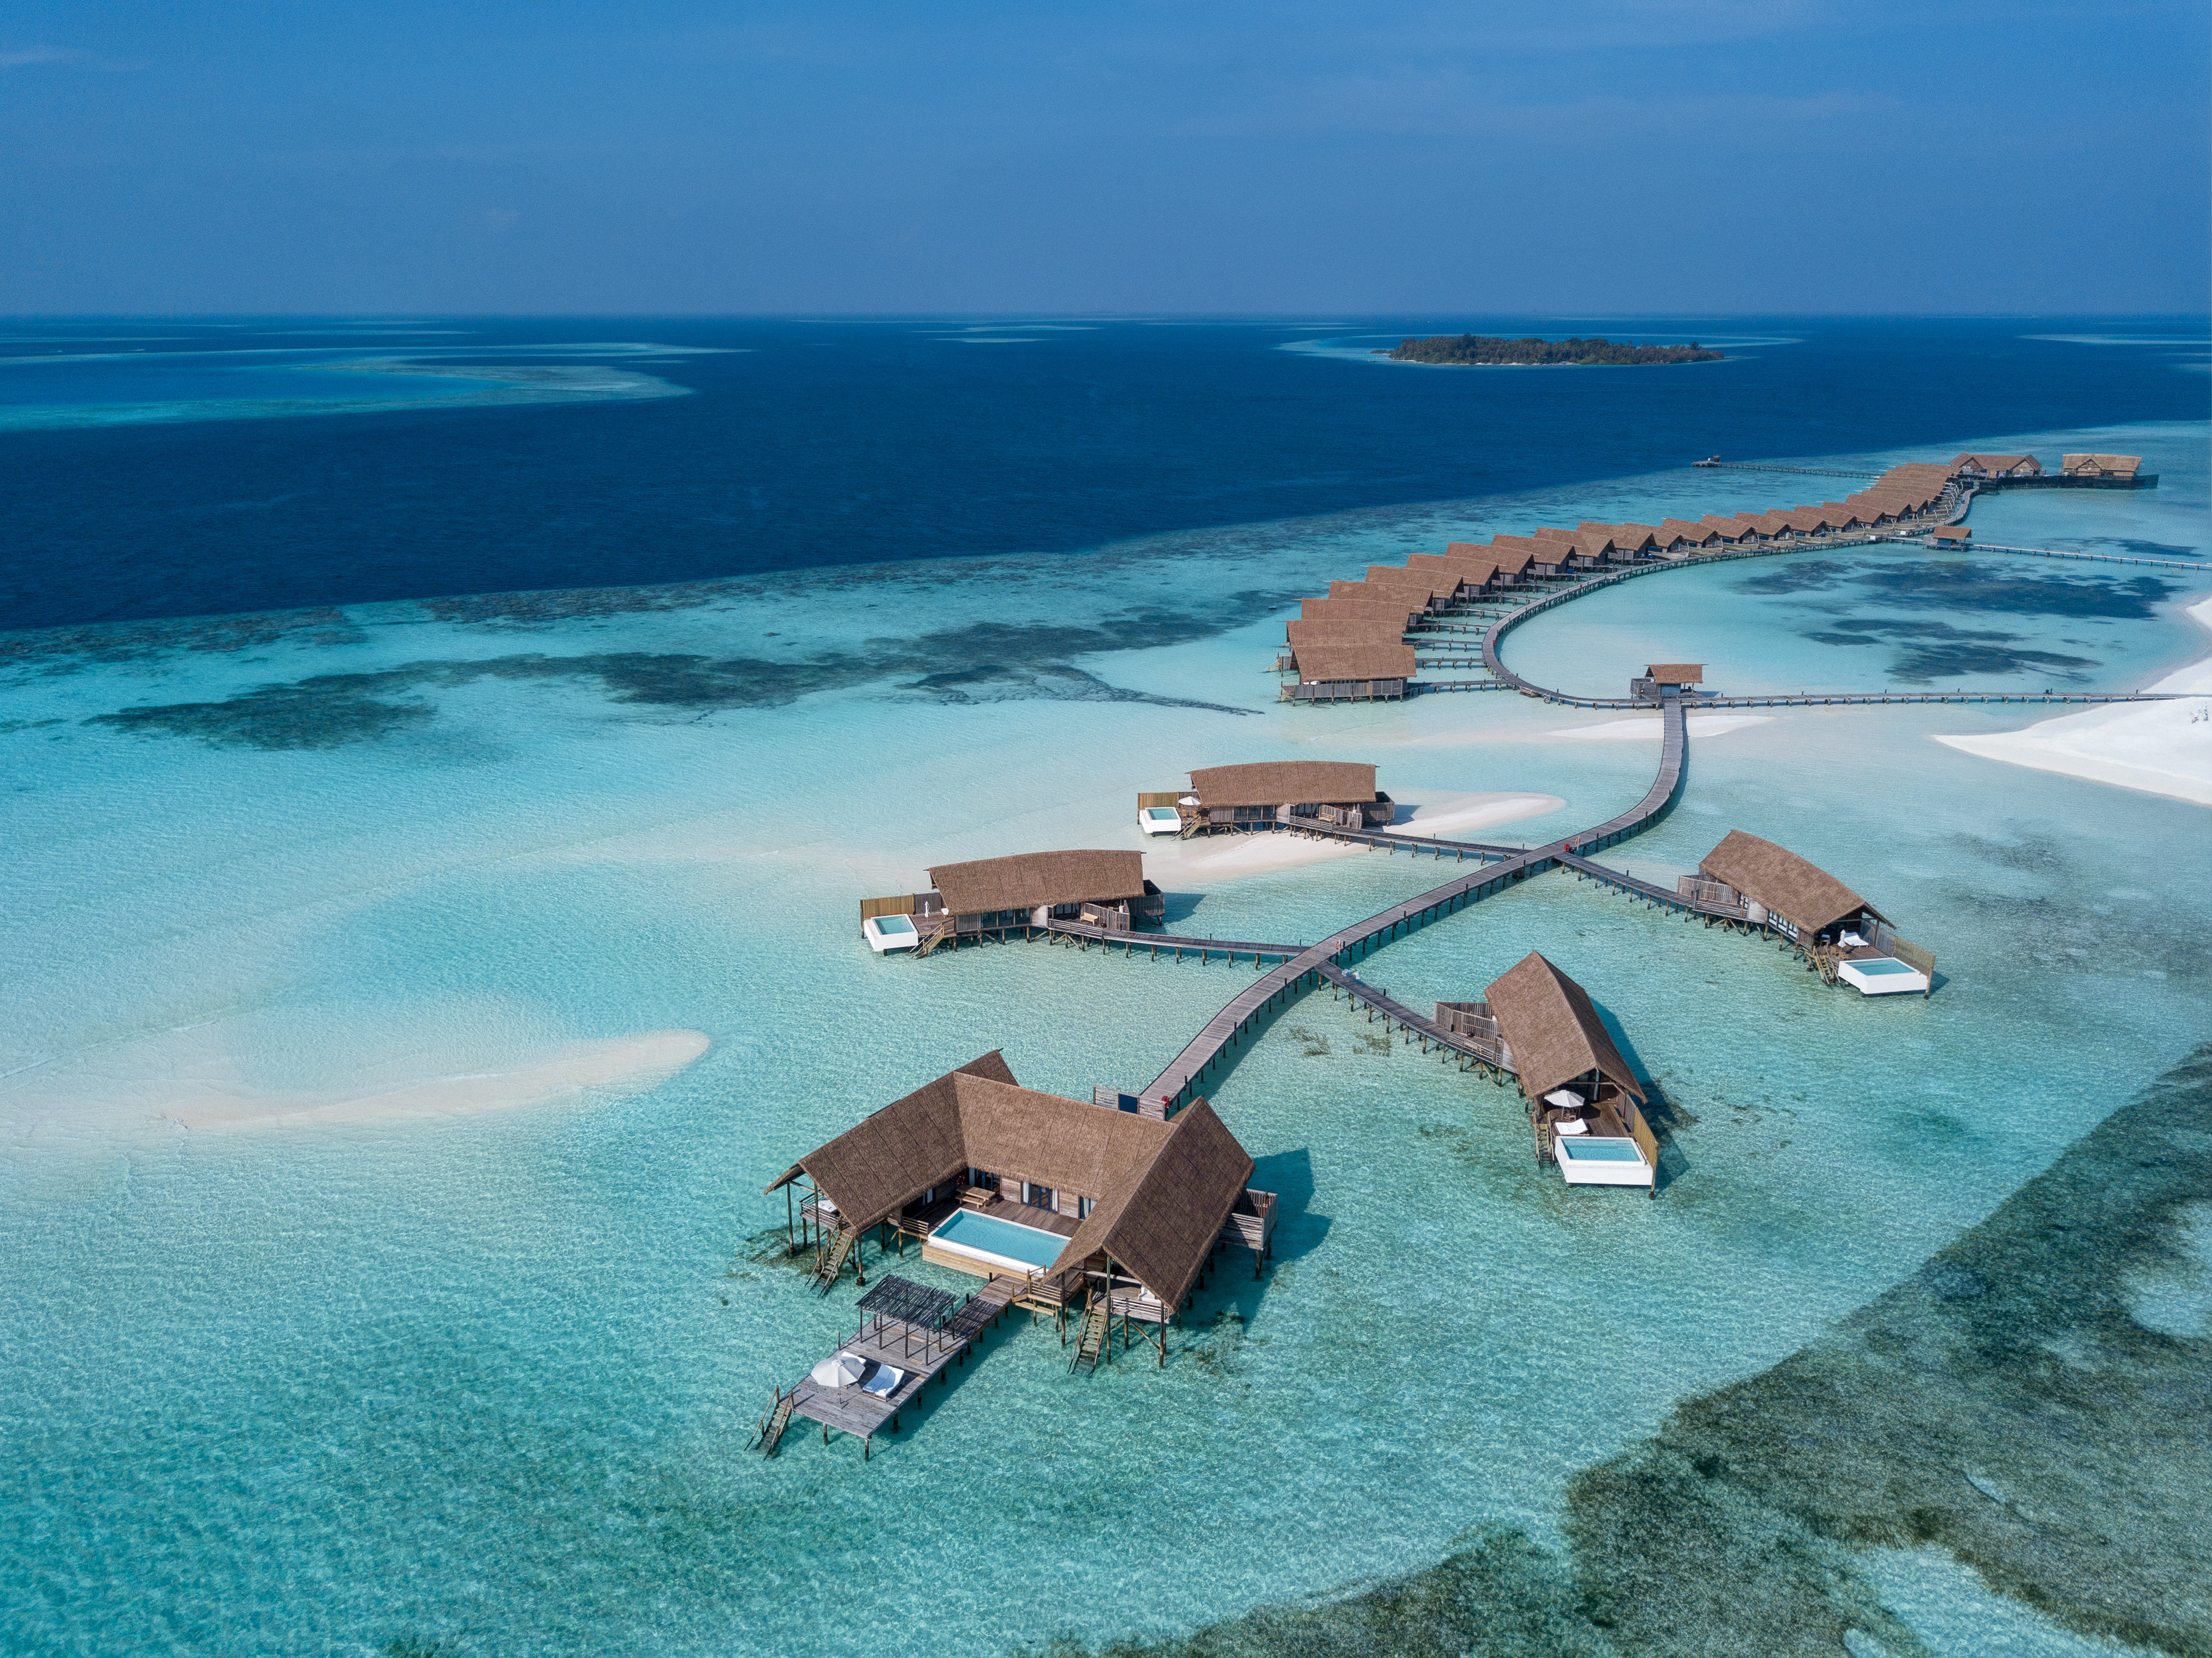 Zdjęcie Como Resort Island - popularne miejsce wśród znawców relaksu